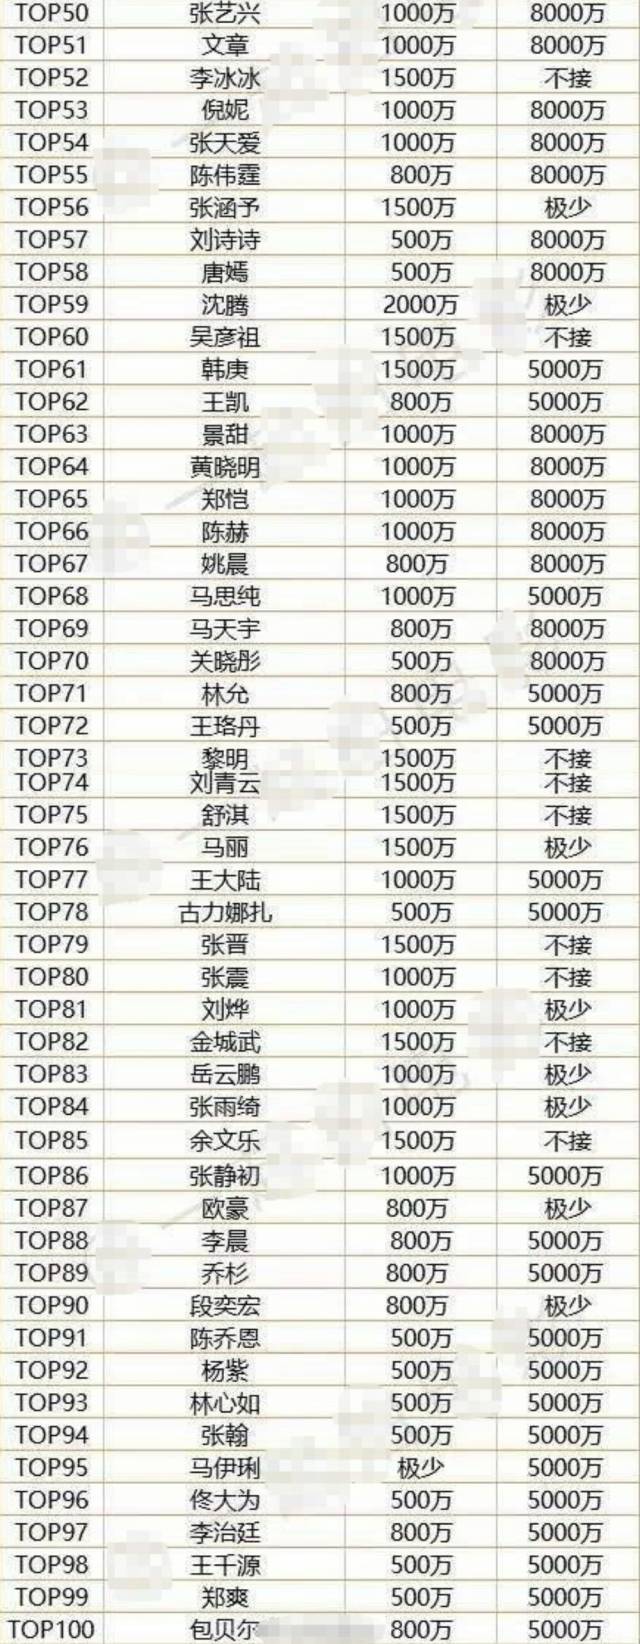 2017年香港媒体做了一份中国明星片酬权利榜top100,在这份榜单中